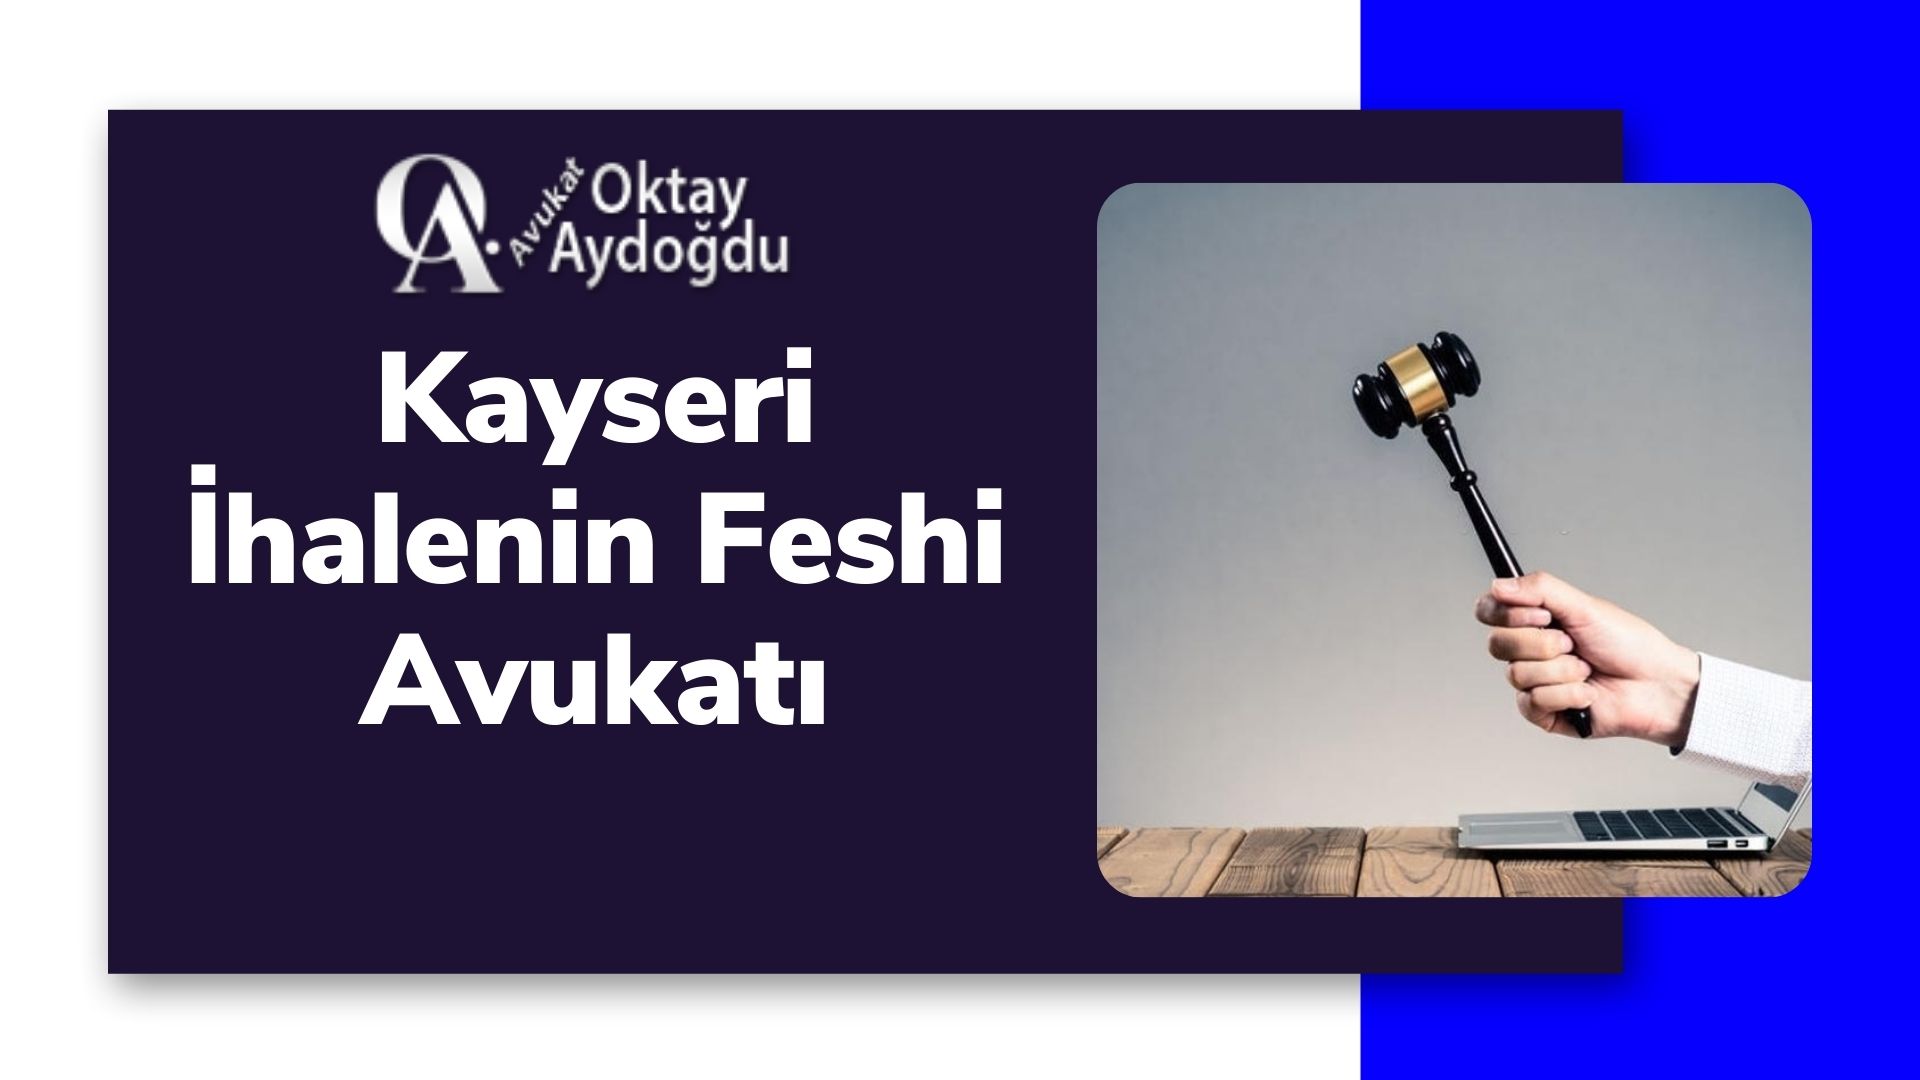 Kayseri İhalenin Feshi Avukatı Oktay Aydoğdu